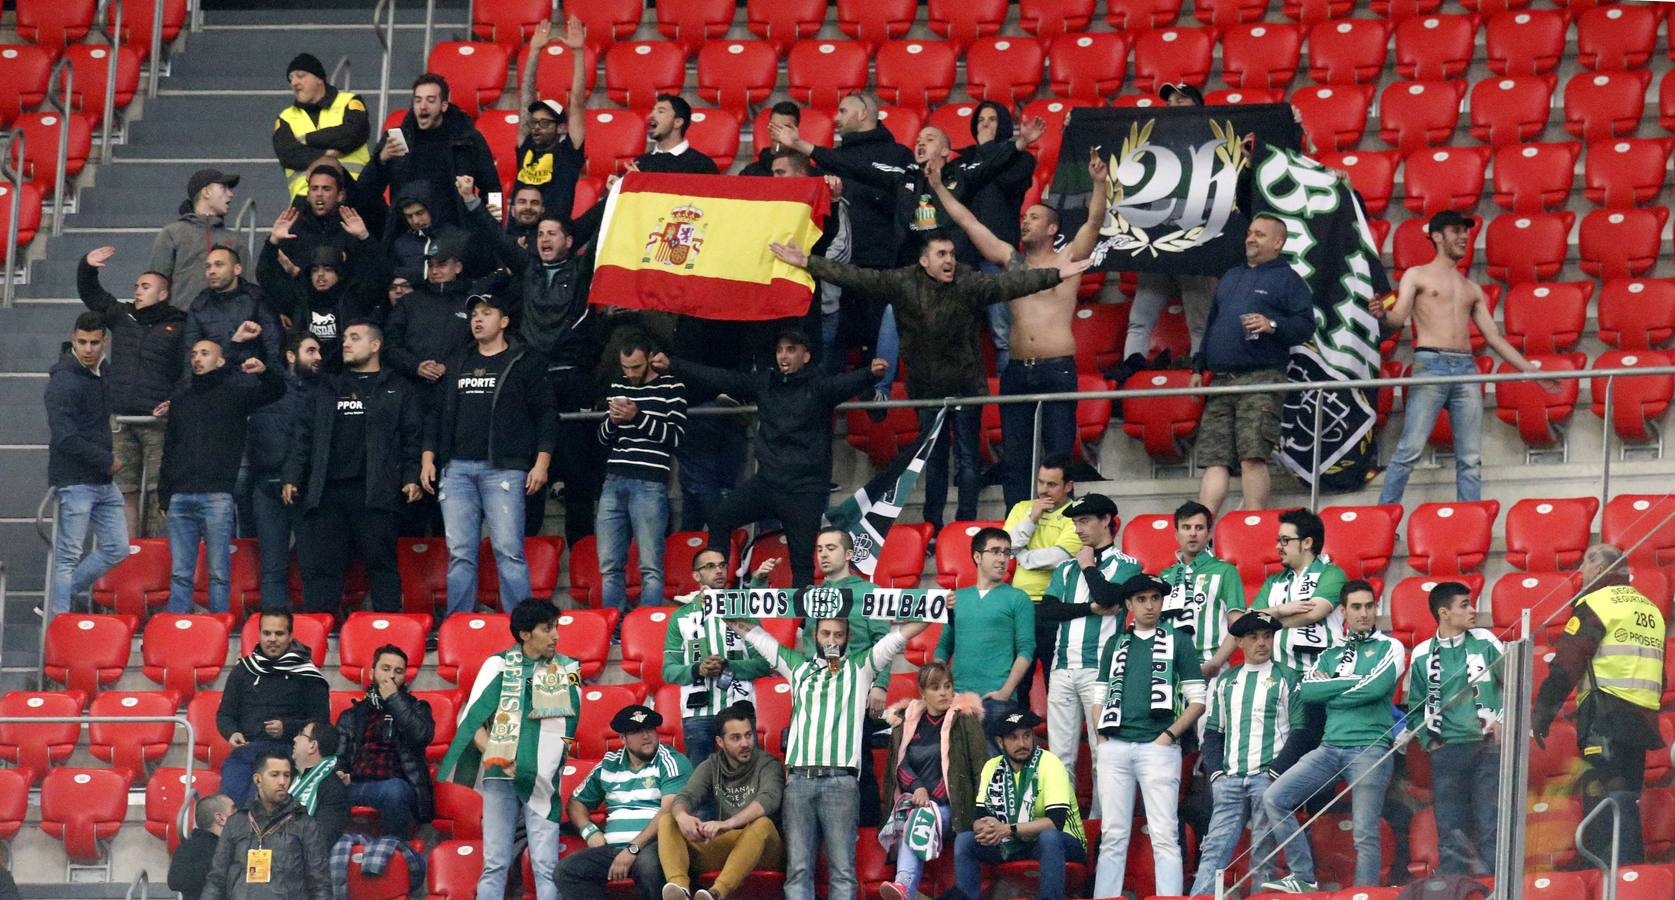 La derrota del Betis ante el Athletic de Bilbao, en imágenes (2-1)